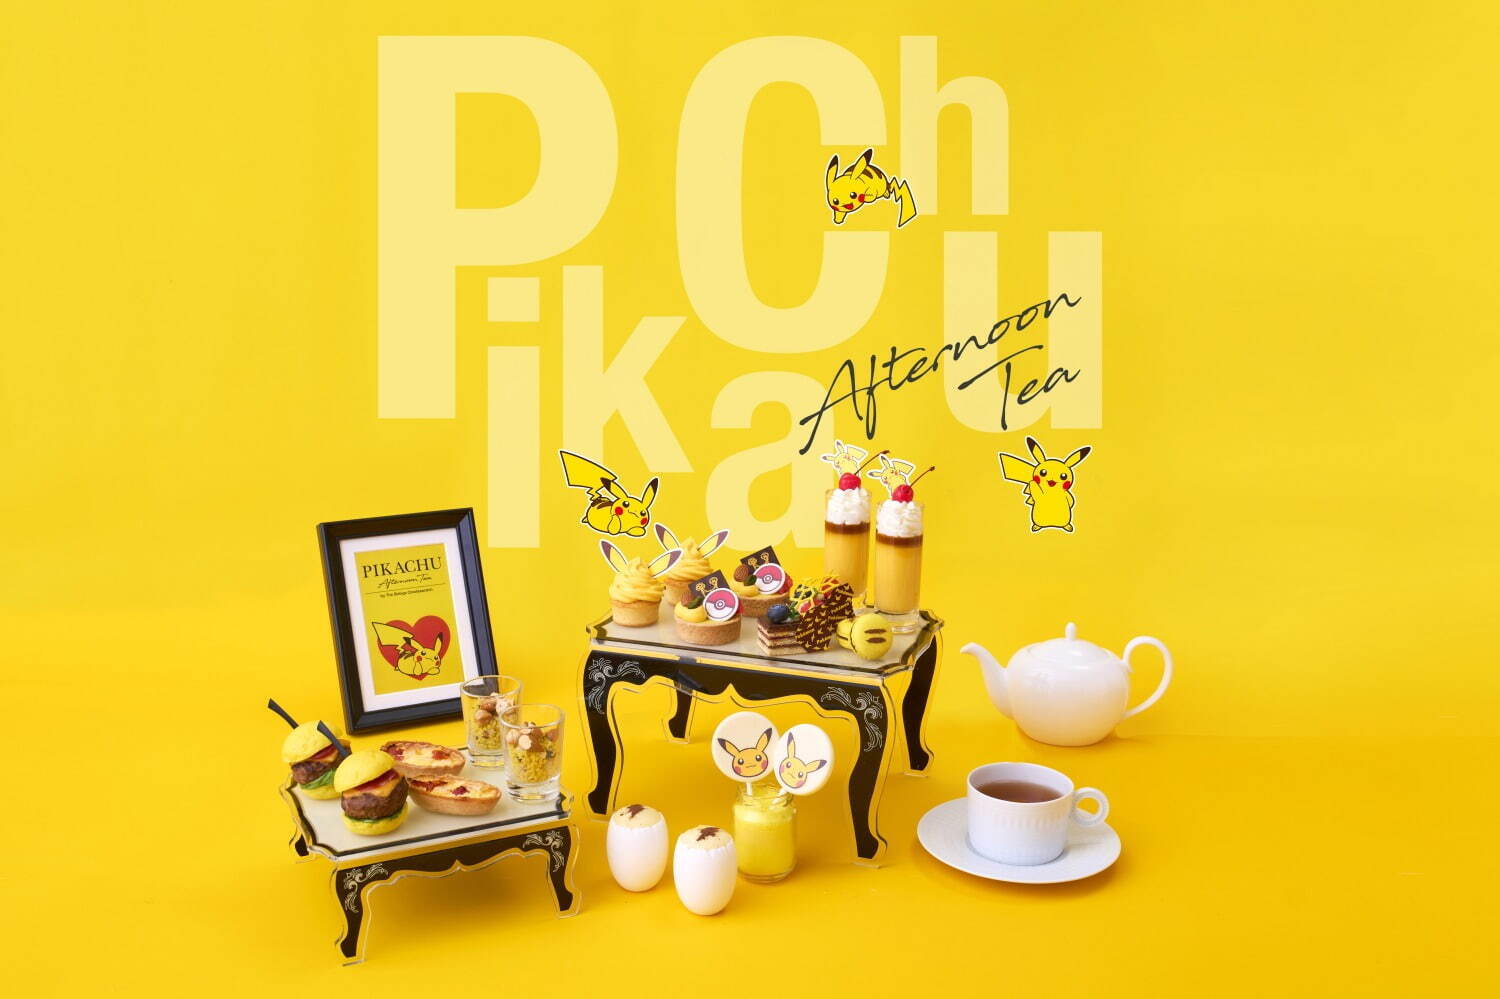 Pikachu Afternoon Tea